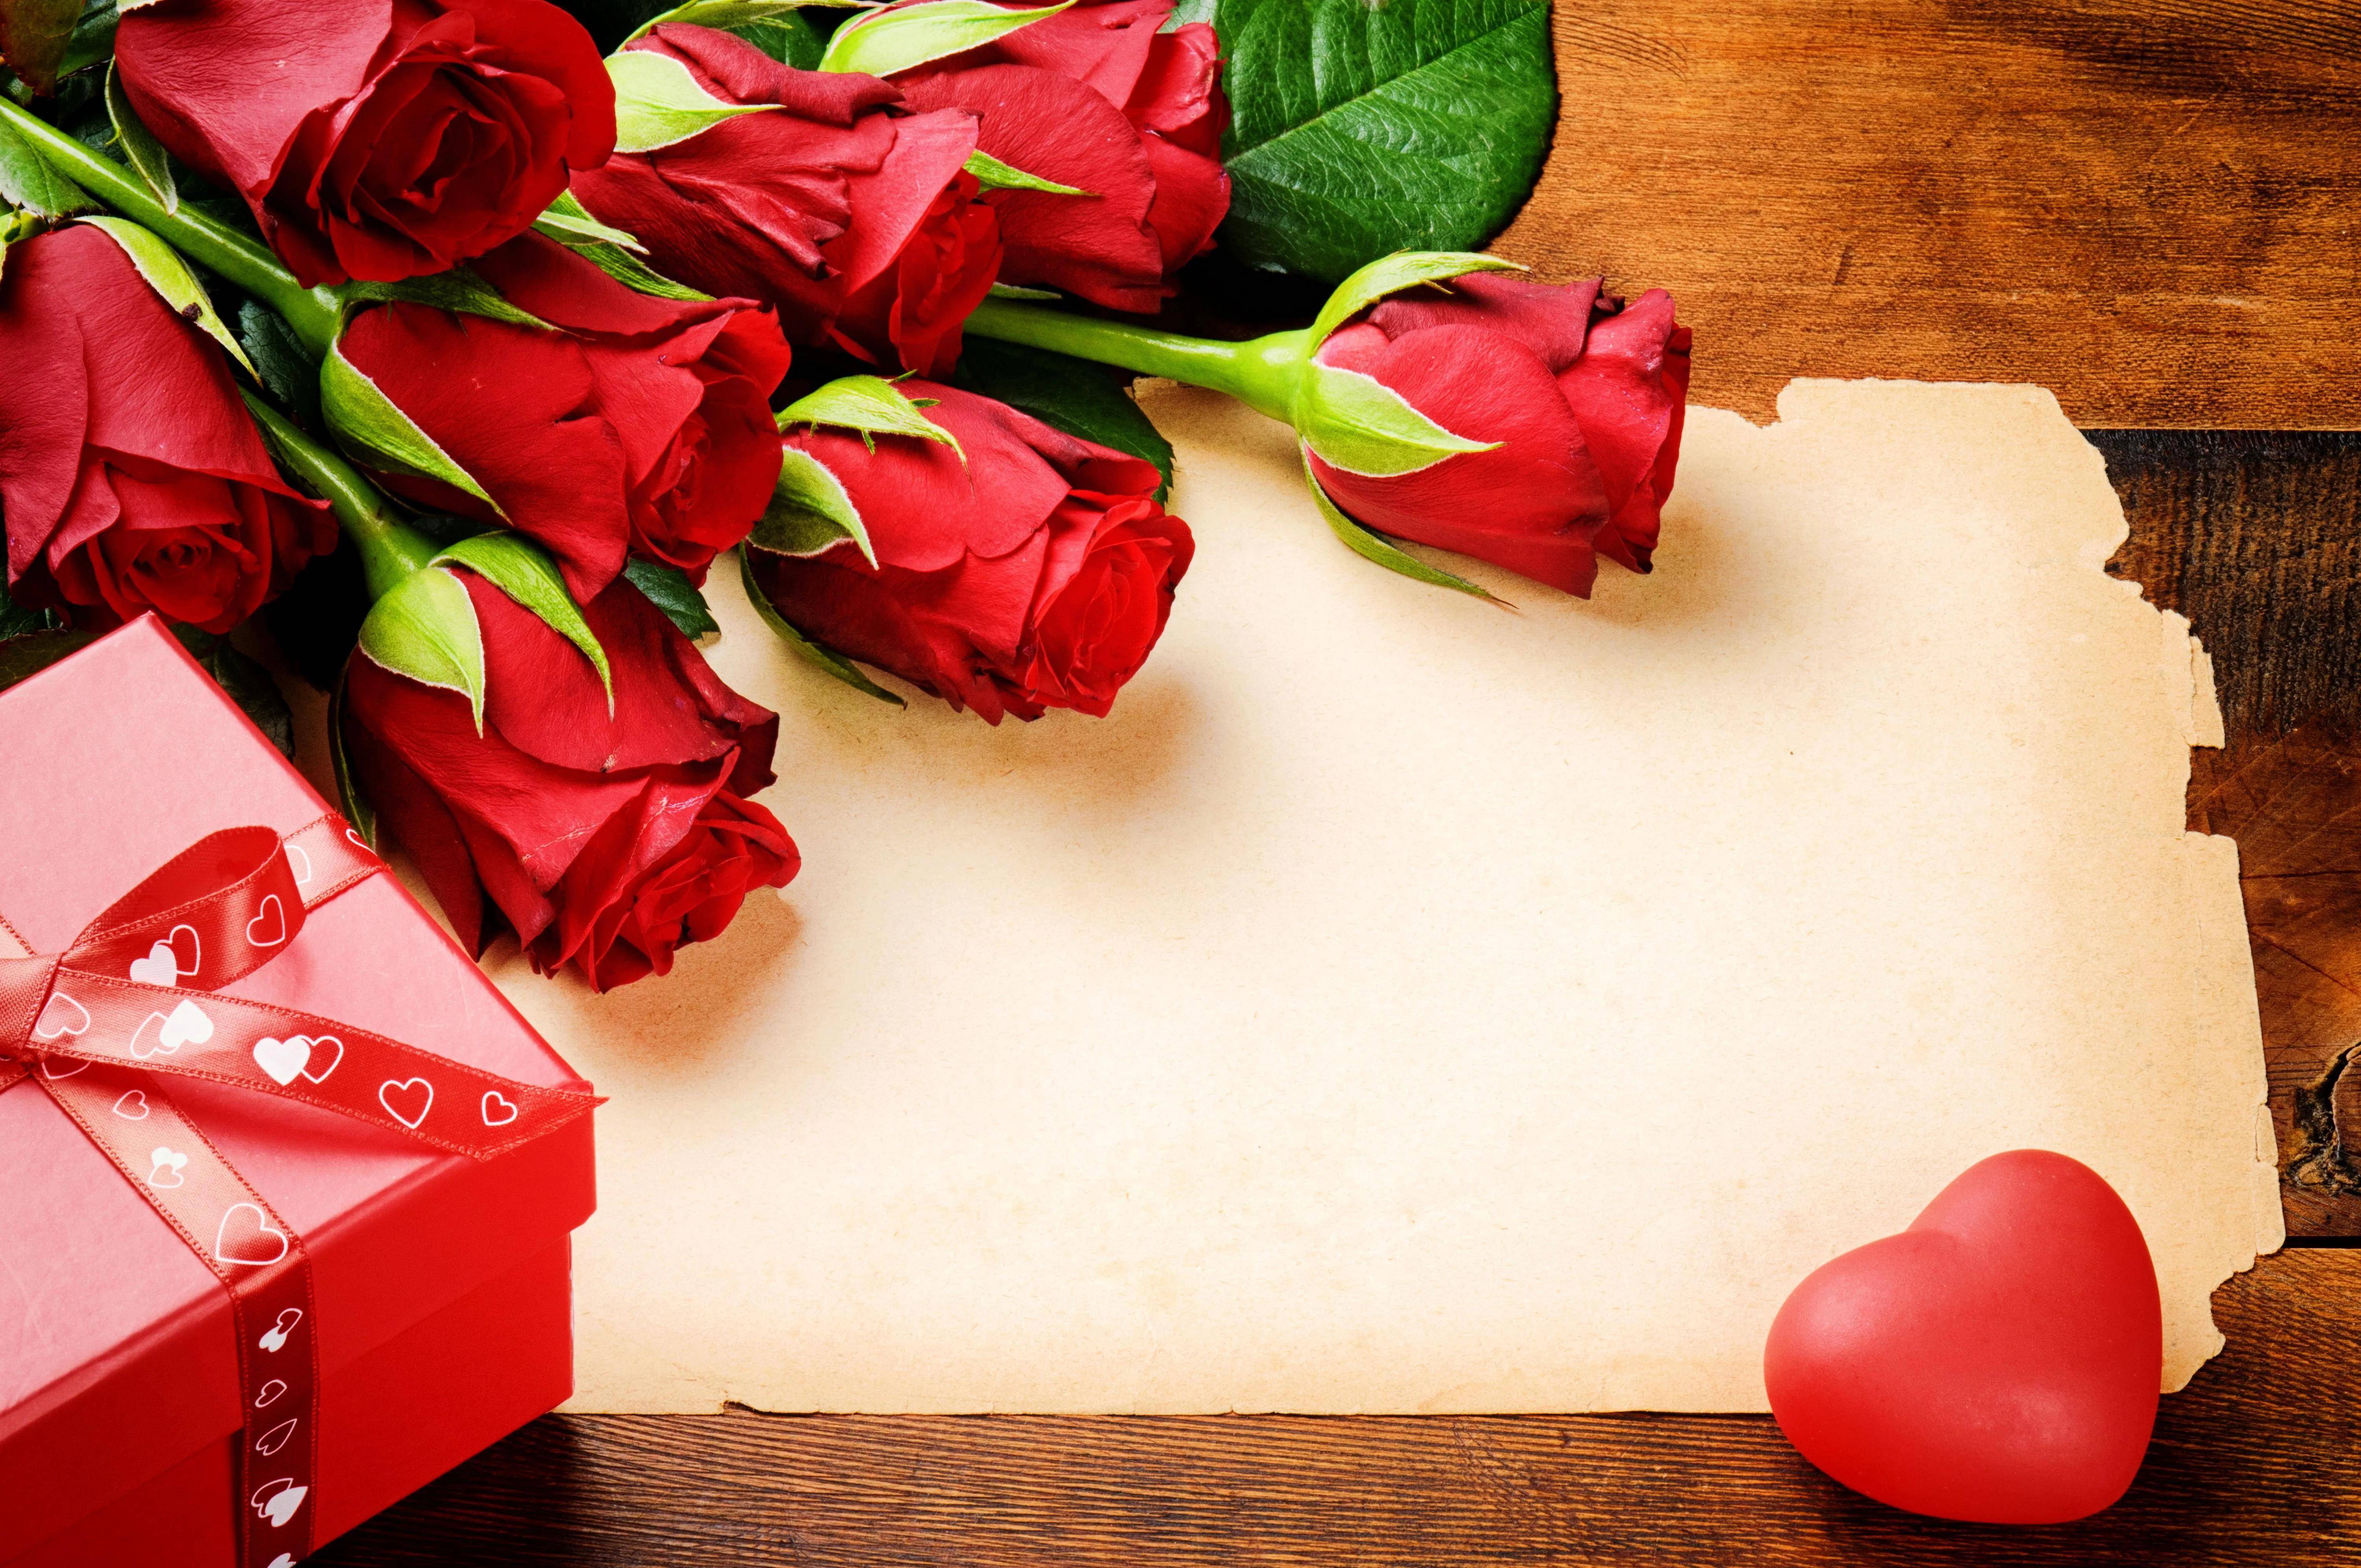 苹果多多红包版是假的吗:“情人节”发红包男女应该是平等的吗？